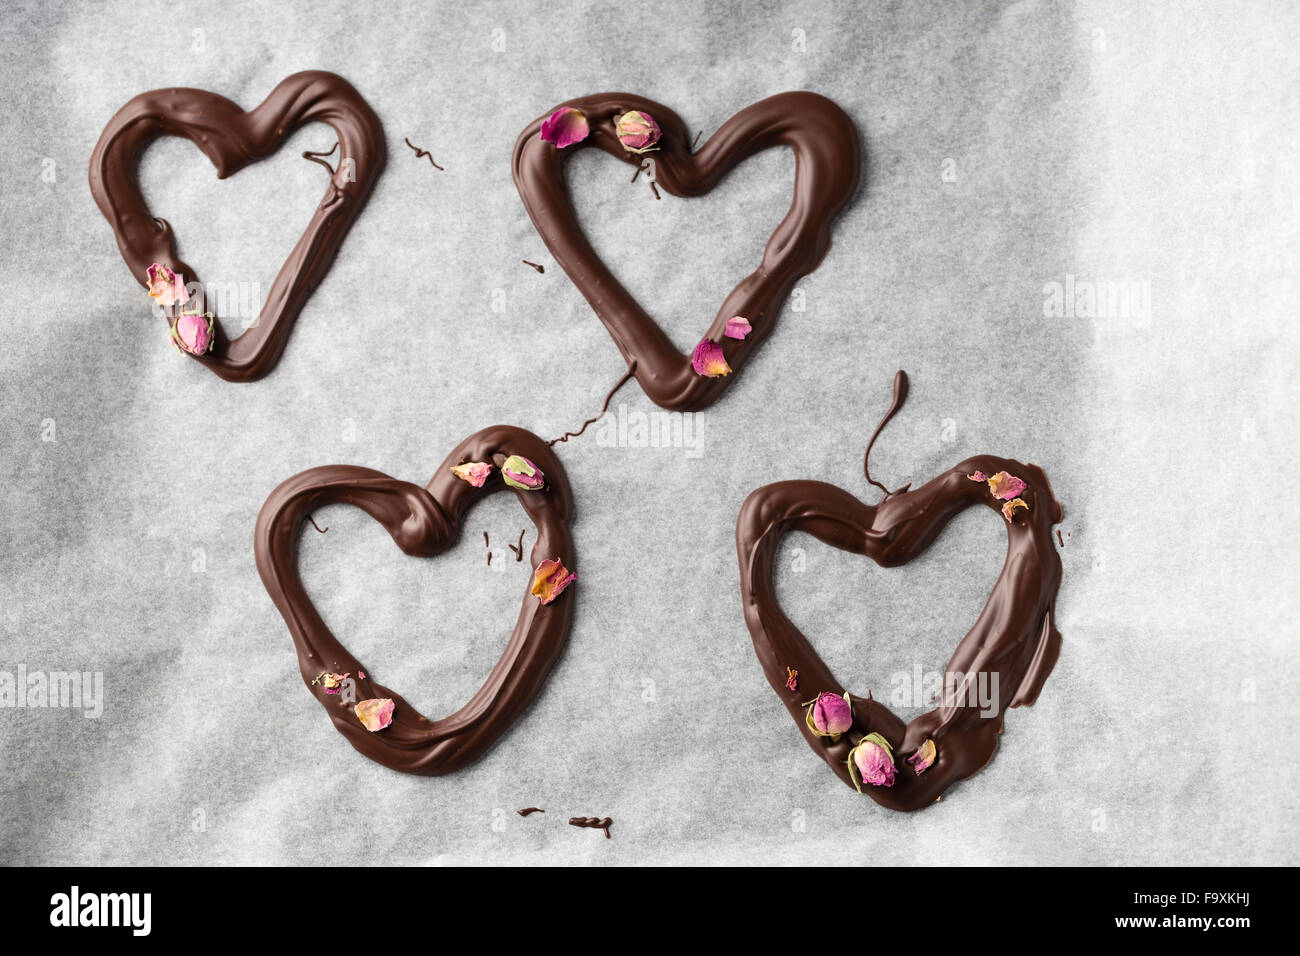 Quatre coeurs au chocolat avec des fleurs rose Banque D'Images